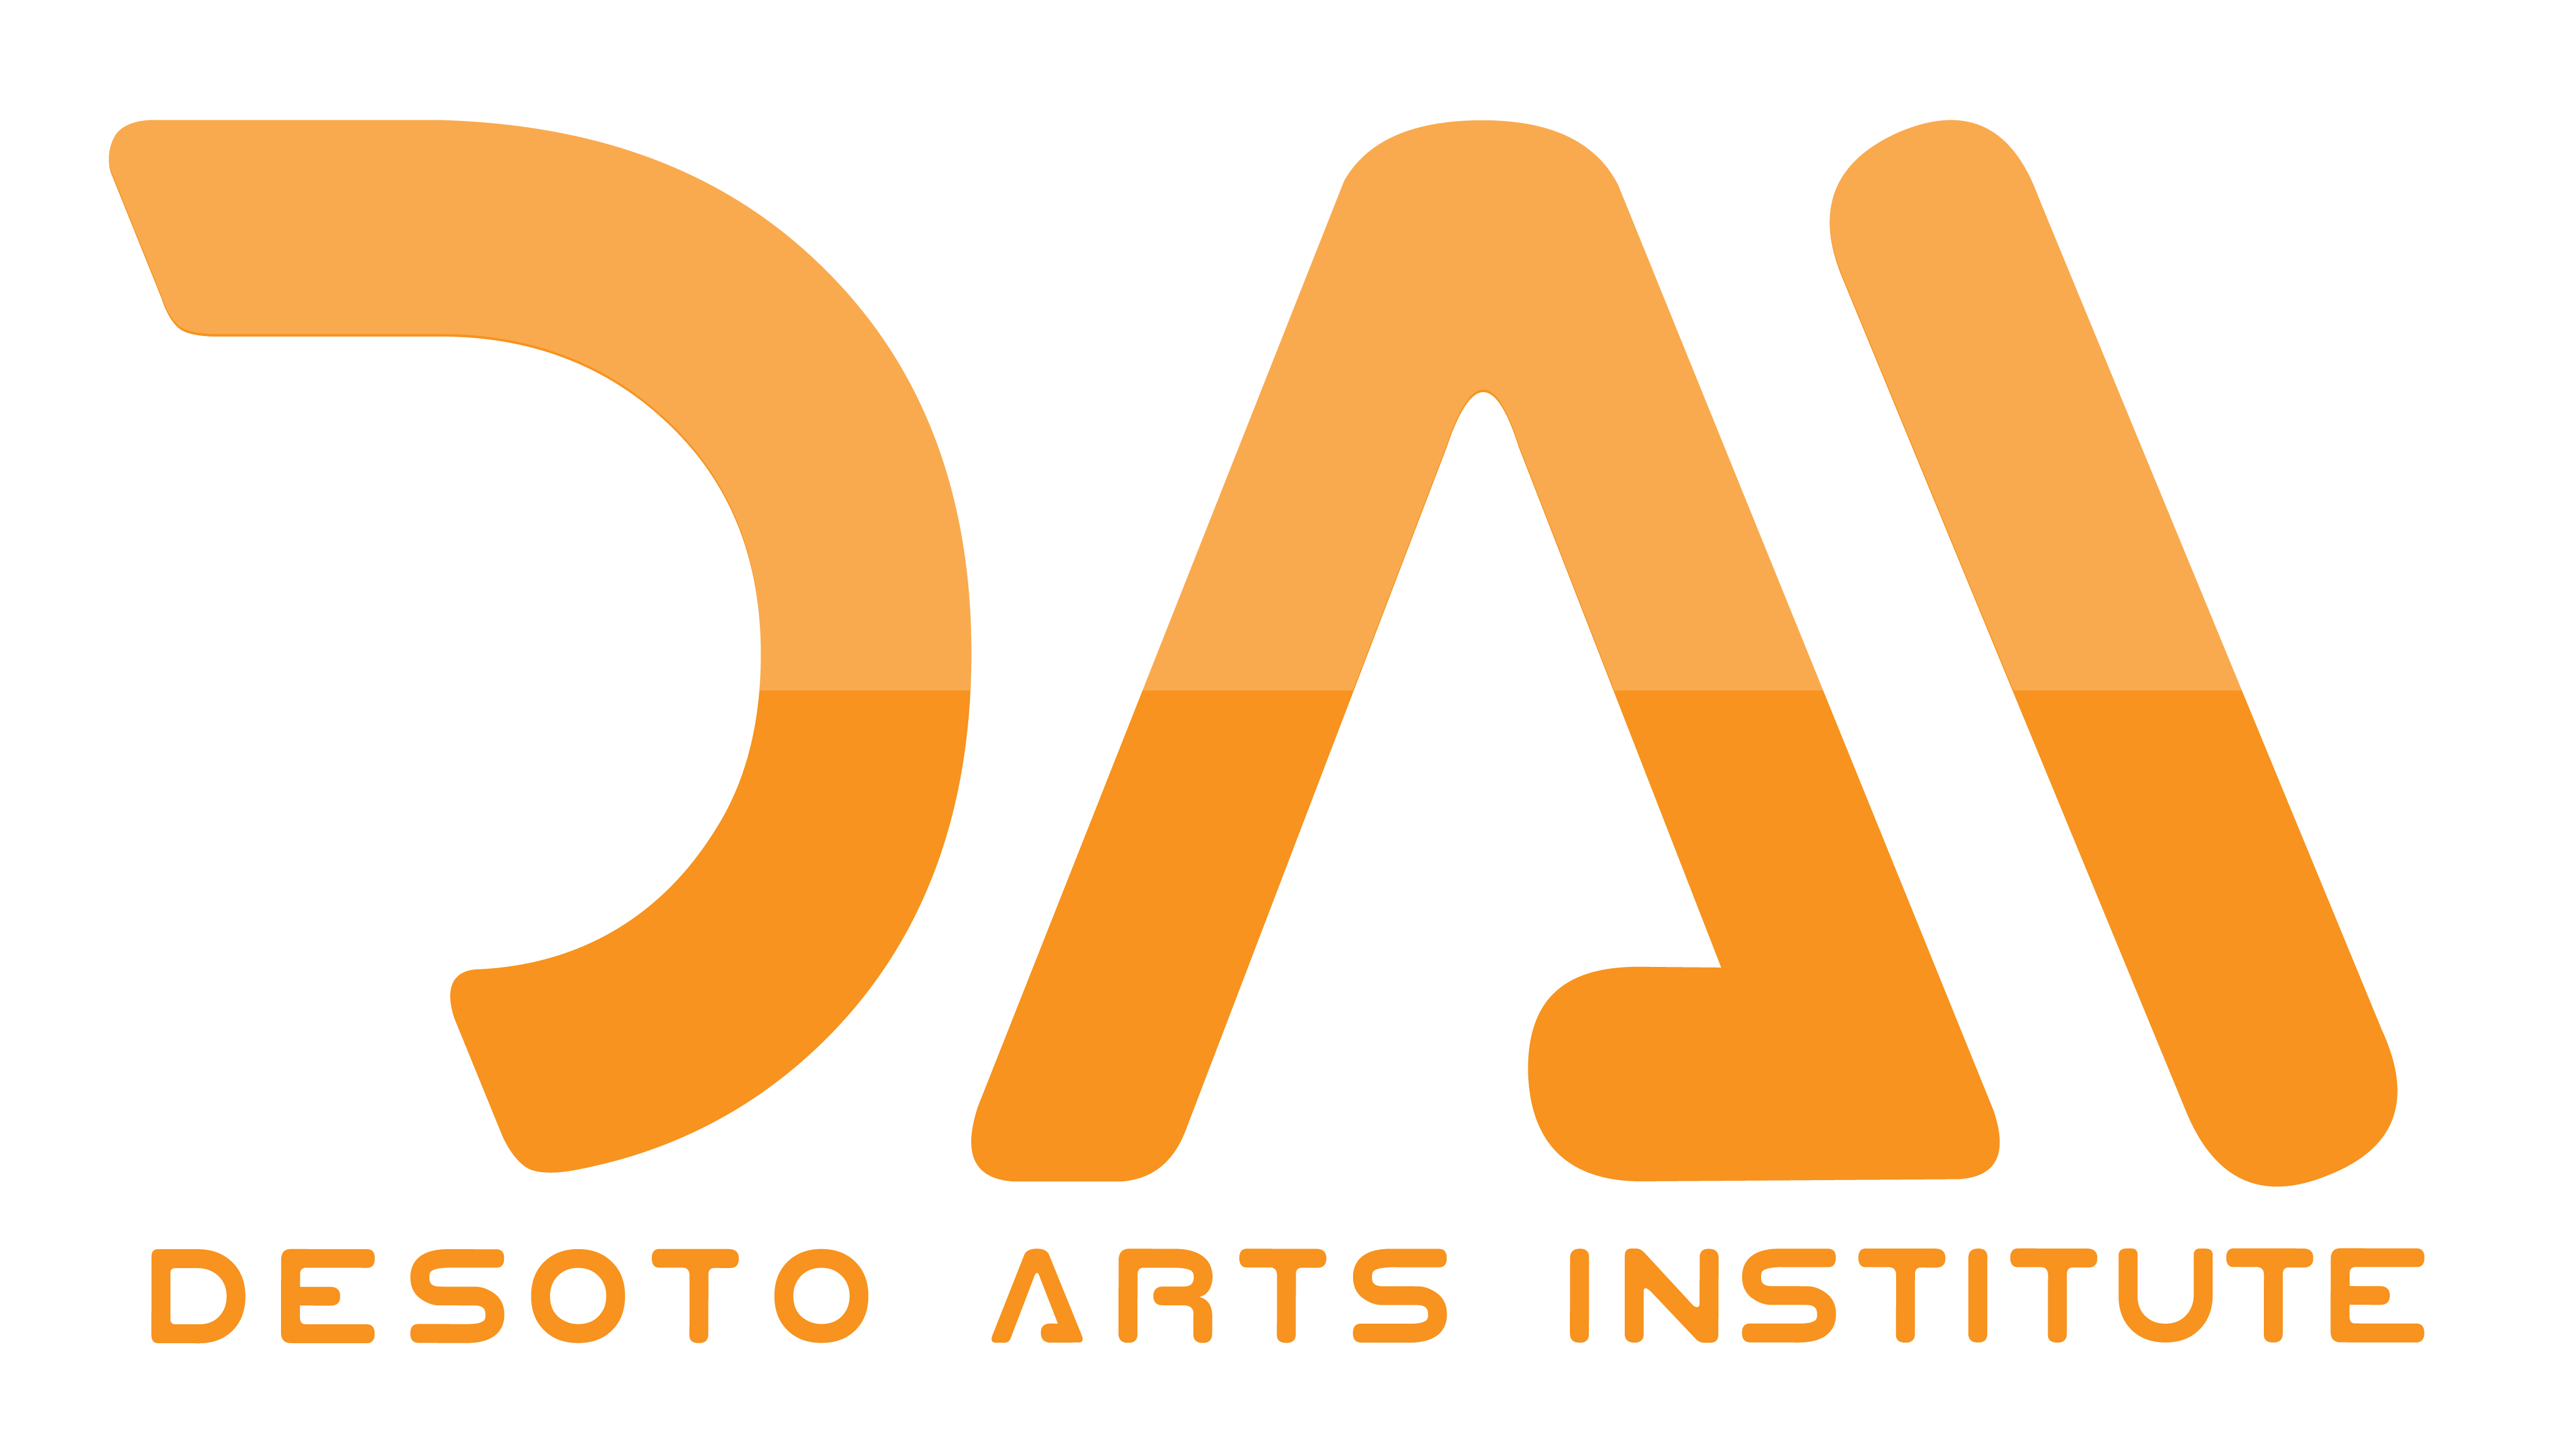 DeSoto Arts Institute Film School, Audio & Music Production